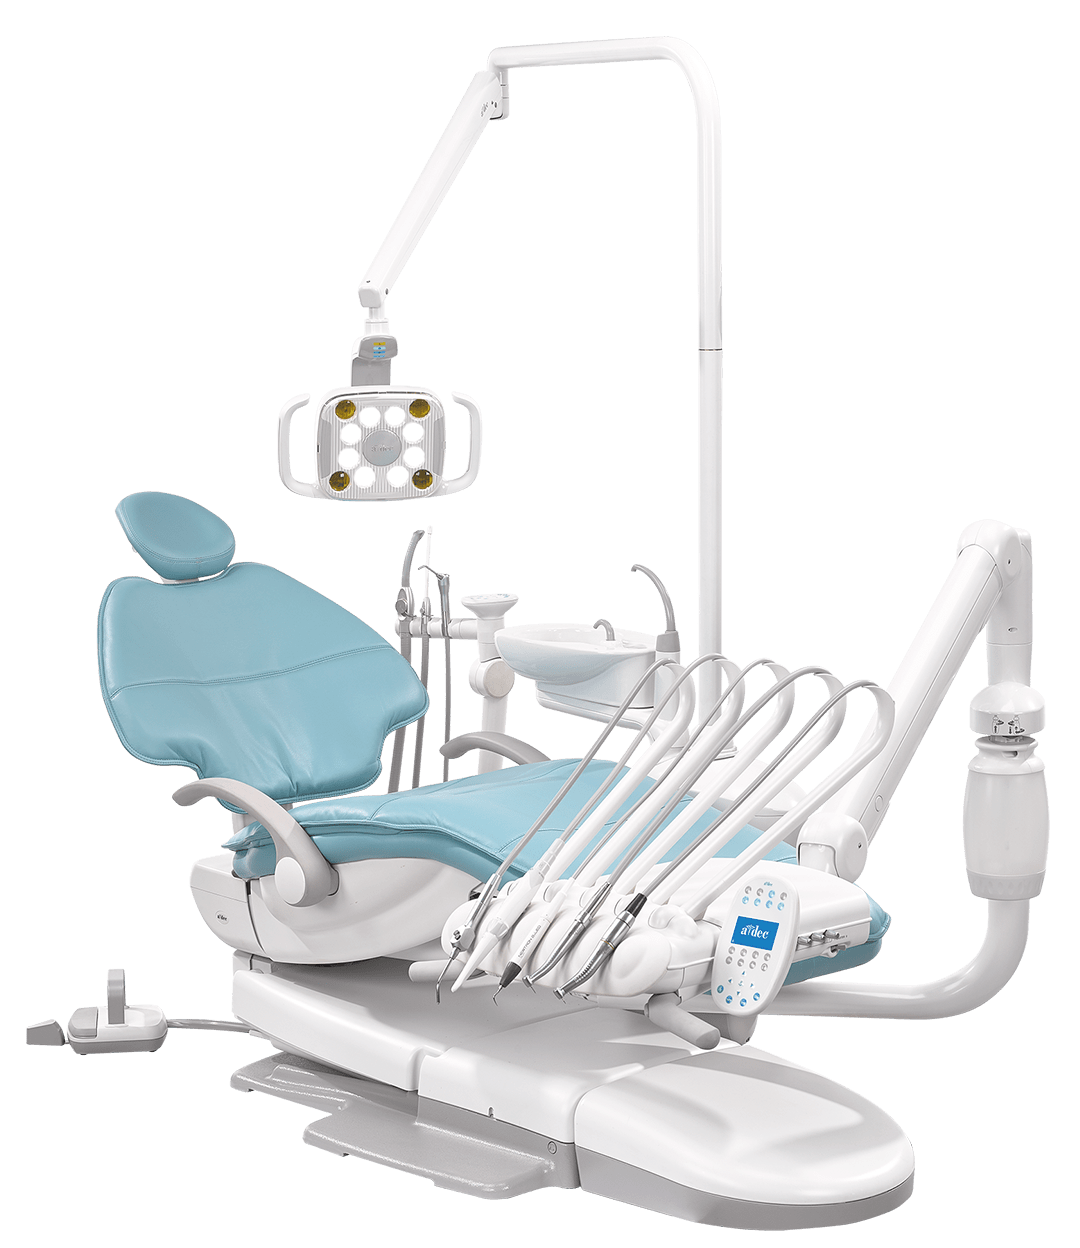 A-dec 歯科ユニット 500シリーズ